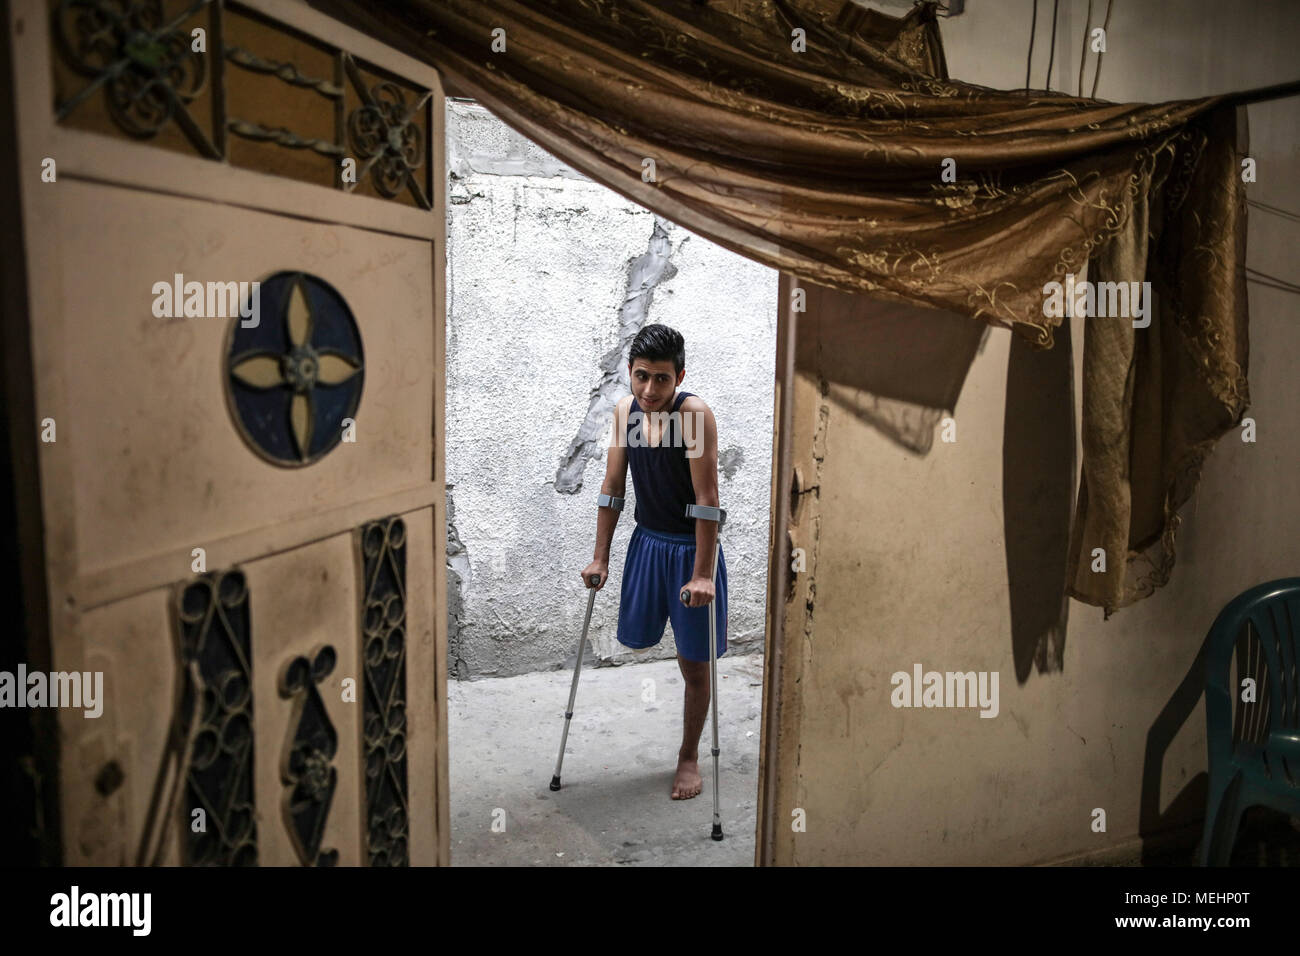 Palästinensischen Flüchtlinge, Mohammed Al-Ajorri, der sein Bein bei Zusammenstößen an der Grenze zwischen Israel und Gaza verloren, gibt seine Familie Haus Krücken, in Flüchtlingslager Jabaliya, nördlichen Gazastreifen, 18. April 2018. Al-Ajorri, 17, war in seinem Bein durch eine israelische Schüsse in der Nähe der Grenze zwischen dem Gazastreifen und Israel am 30. März 2018 verletzt und hatte sein rechtes Bein amputiert, nachdem es Zugang zu einer ausreichenden medizinischen Versorgung außerhalb des Gazastreifens zu haben. Foto: Wissam Nassar/dpa Stockfoto